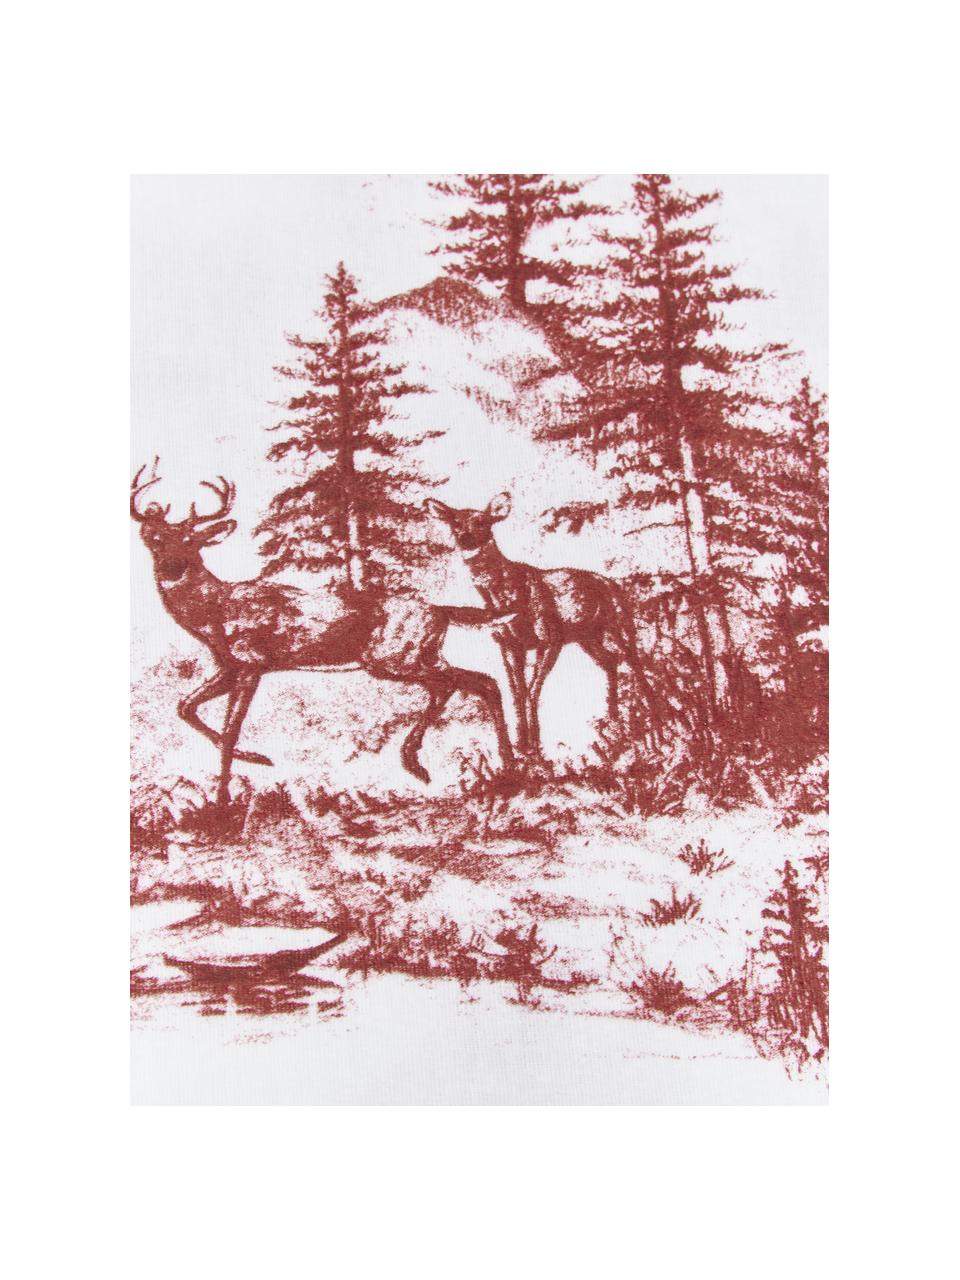 Flanell-Bettwäsche Nordic mit winterlichem Motiv in Rot/Weiss, Webart: Flanell Flanell ist ein k, Rot, Weiss, 135 x 200 cm + 1 Kissen 80 x 80 cm